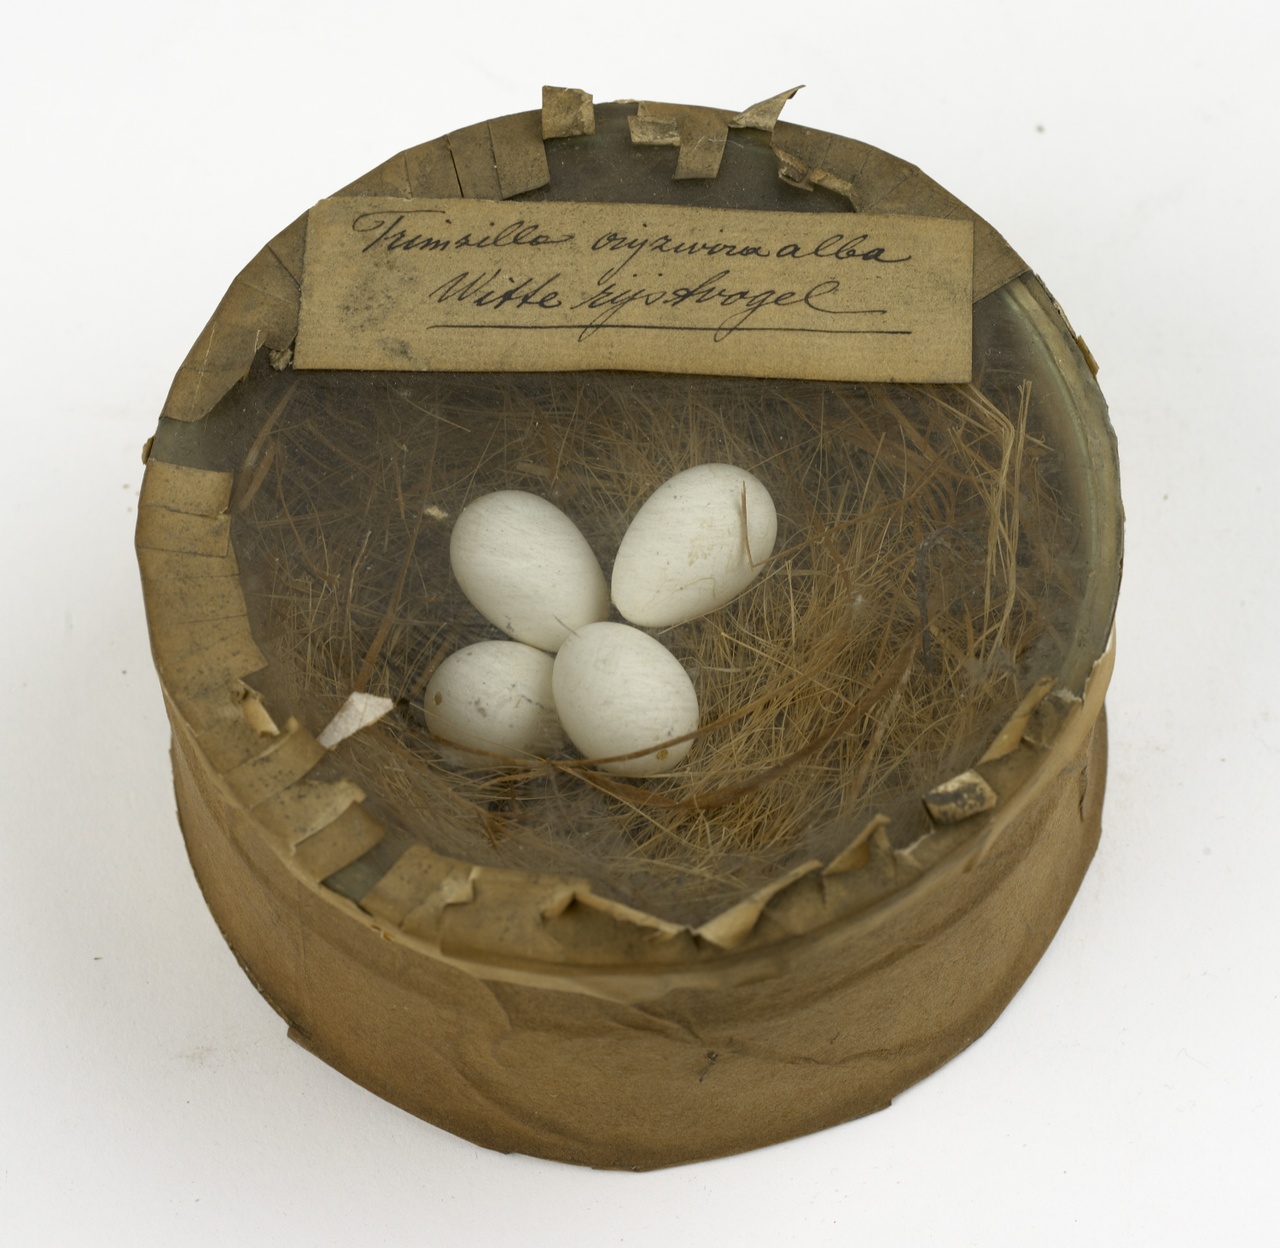 Nest met eieren van witte rijstvogel